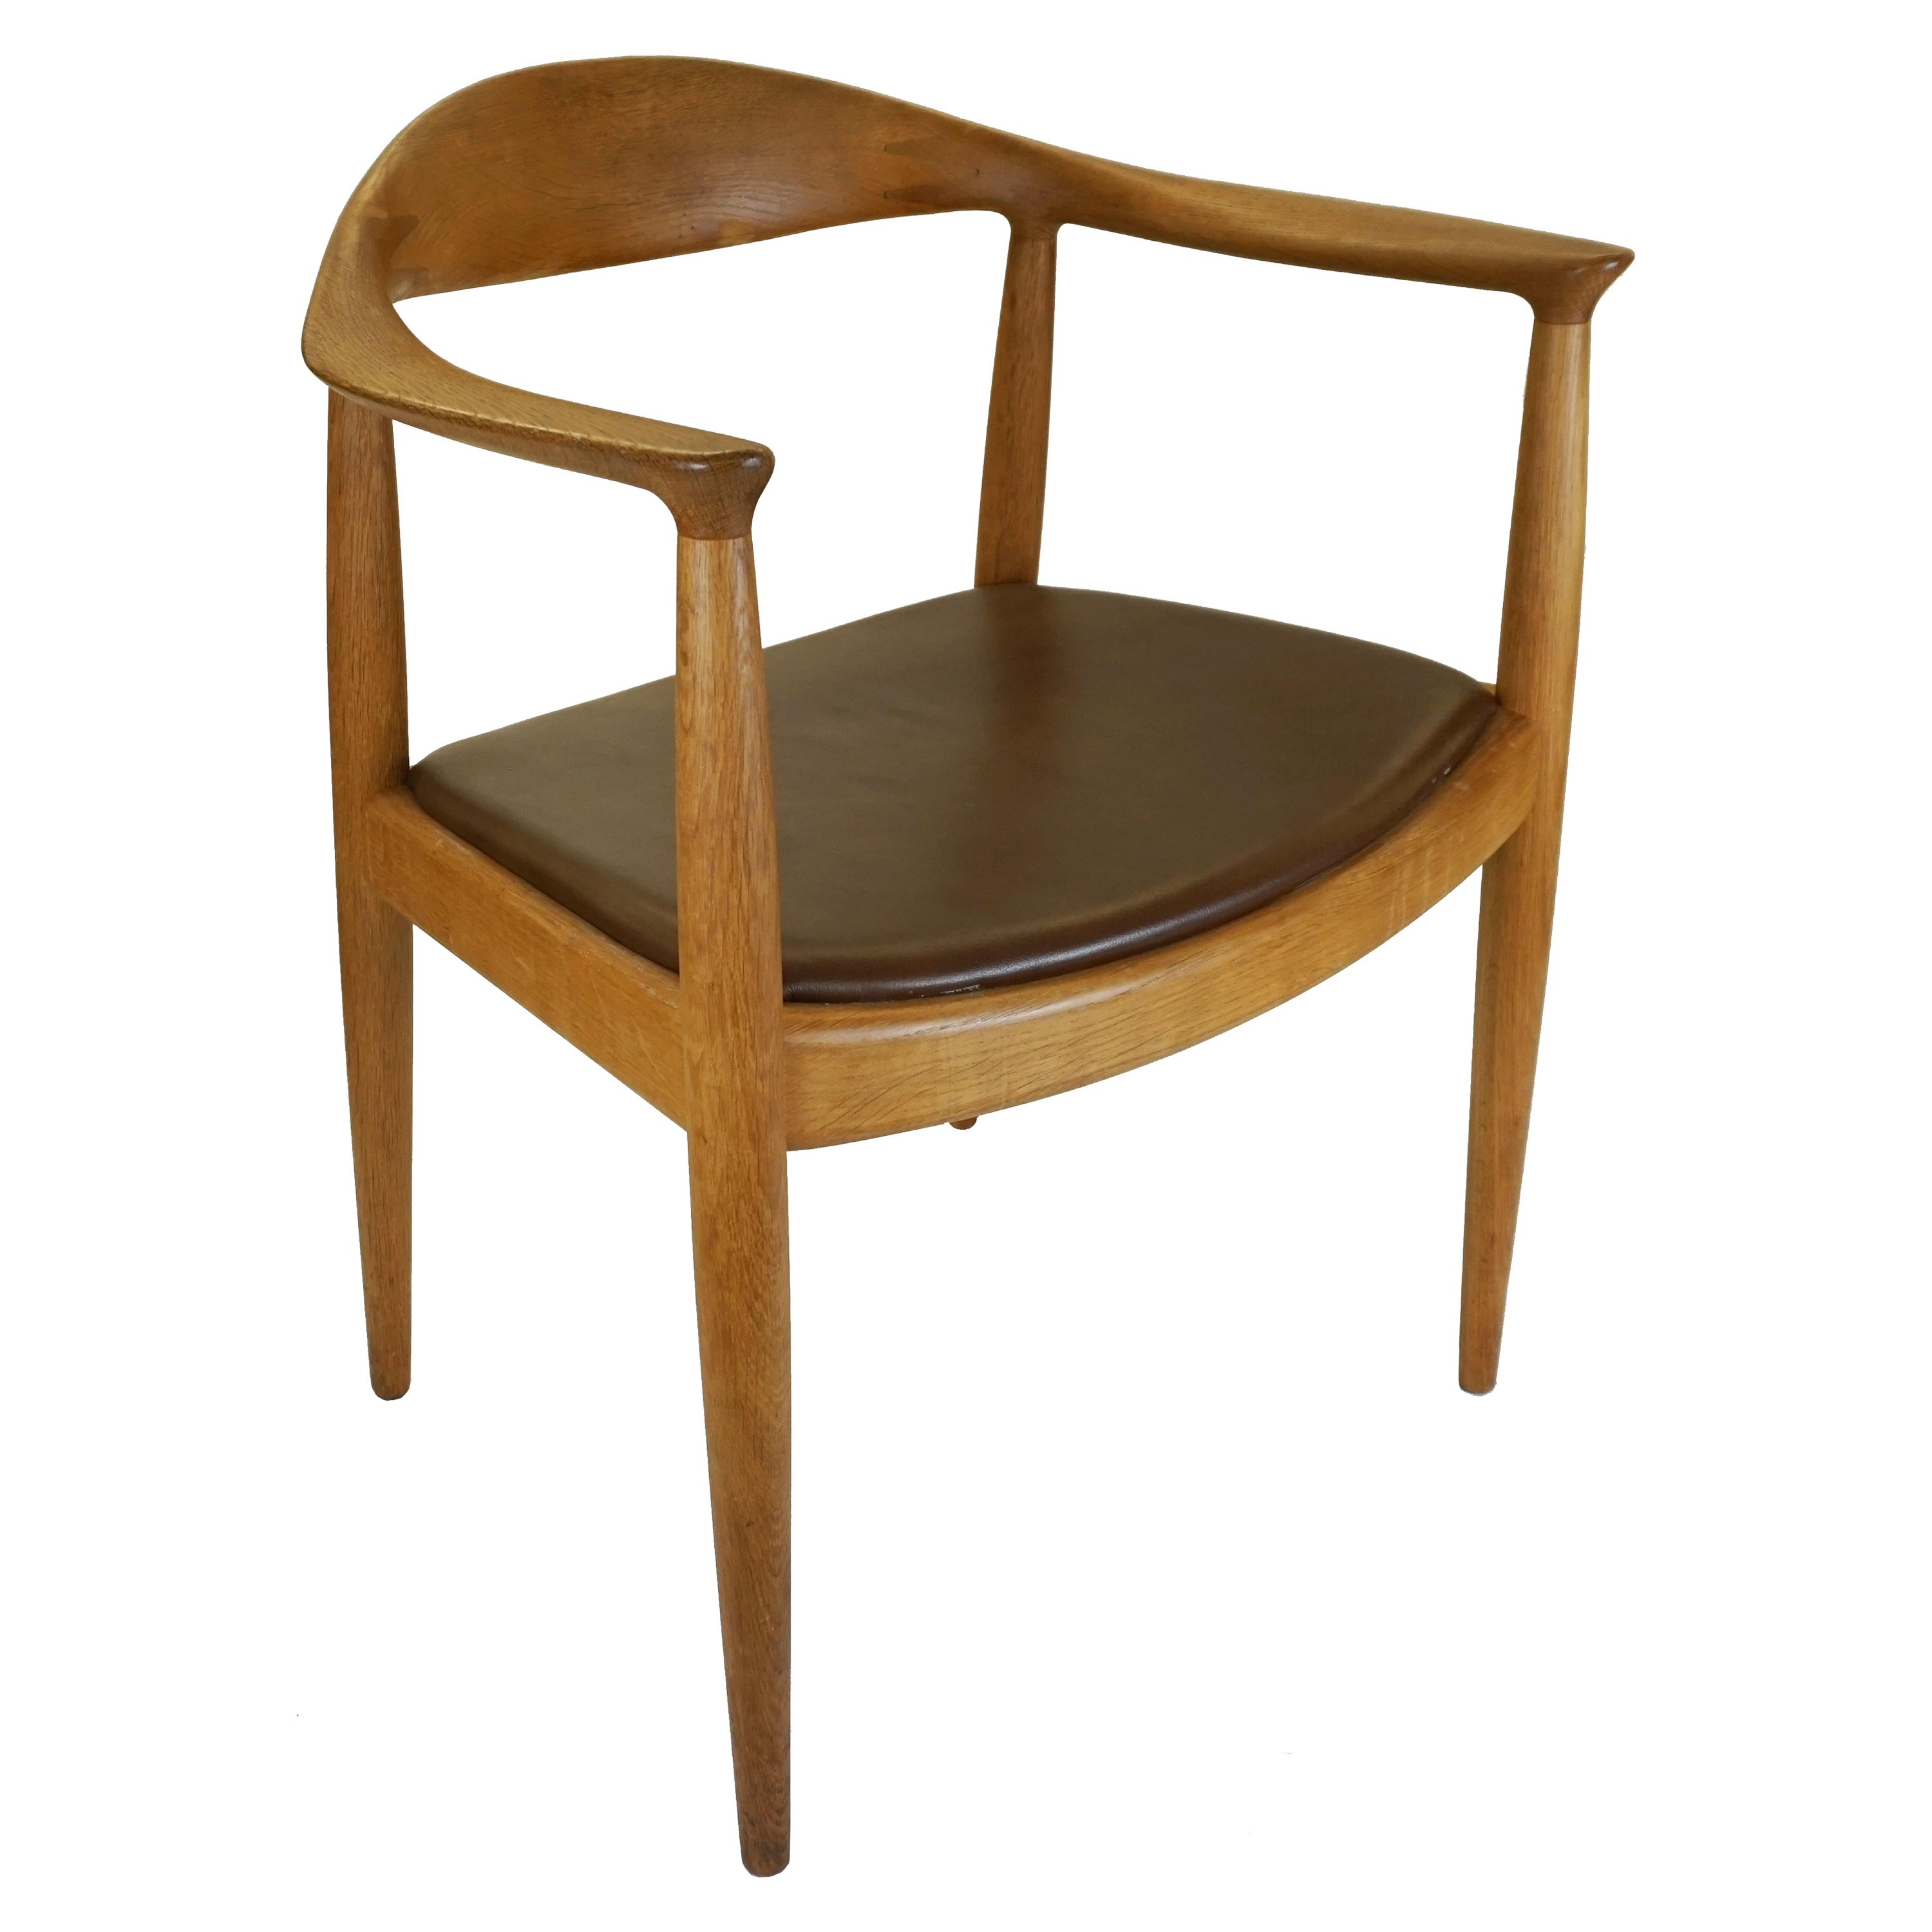 'The Chair' designed by Hans Wegner for Johannes Hansen, Denmark For Sale